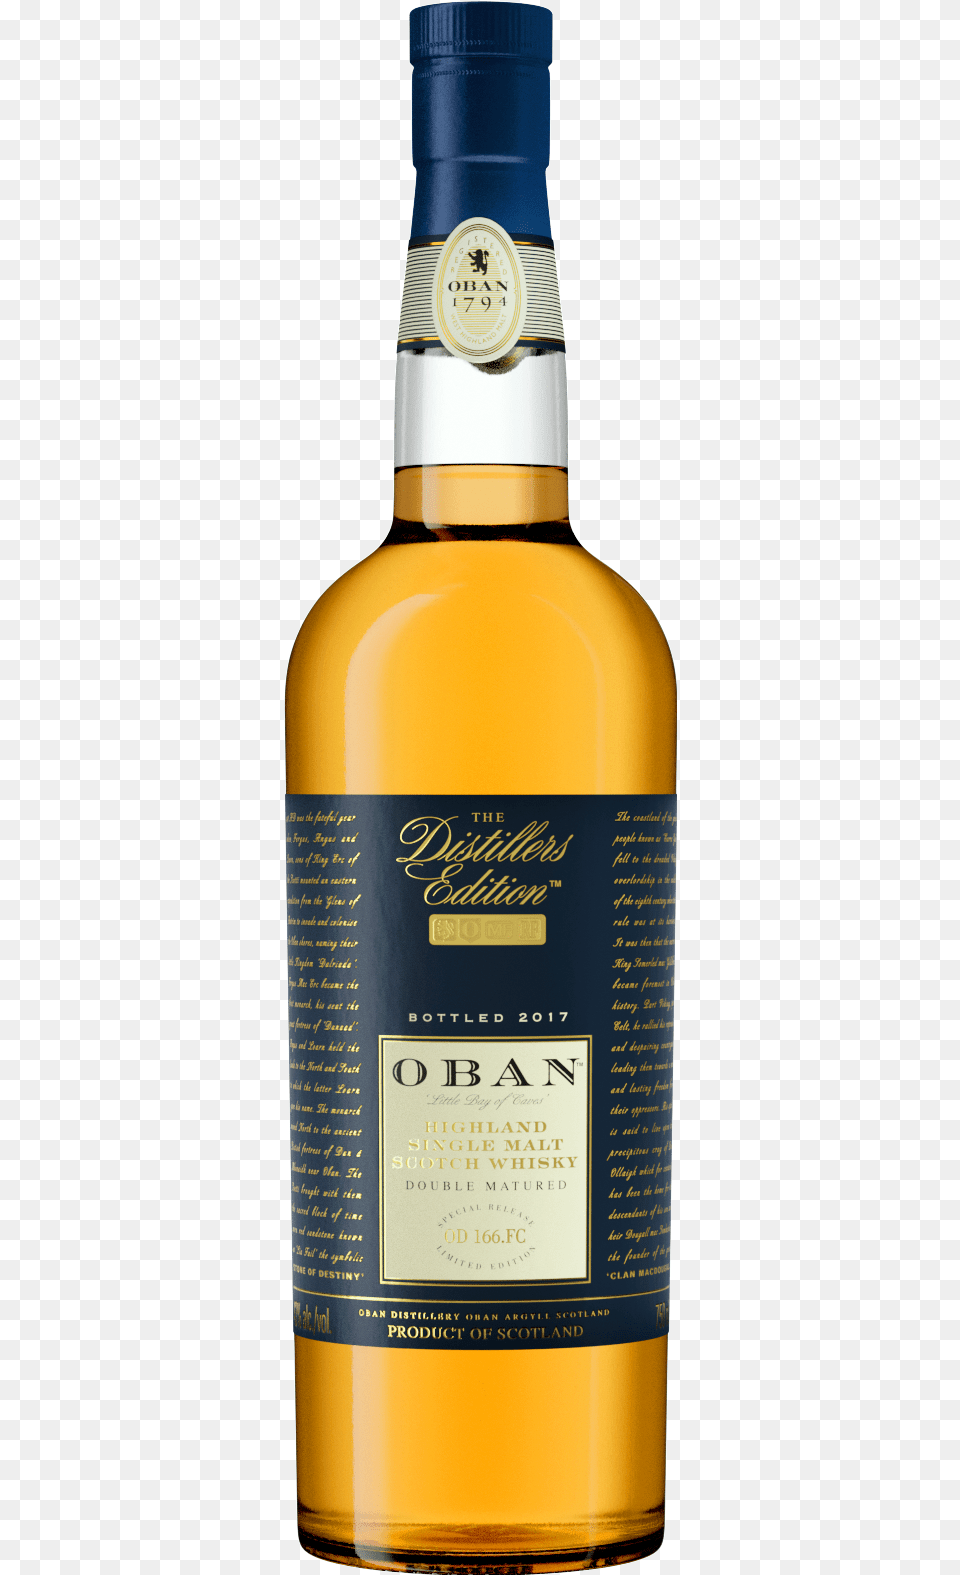 Oban Distillers Edition, Alcohol, Beverage, Liquor, Whisky Png Image